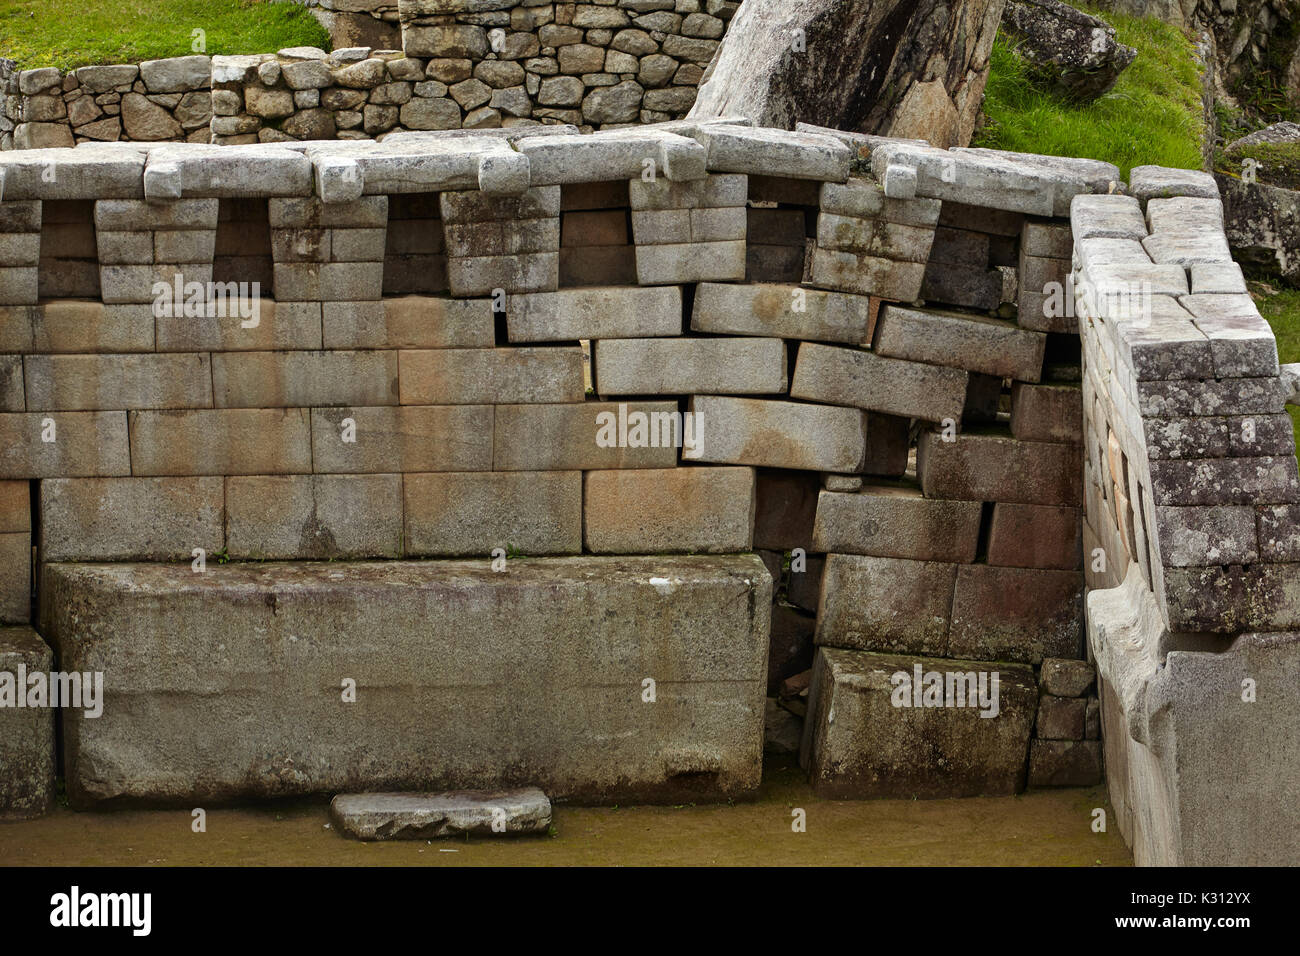 Dommages à la Place Sacrée, Machu Picchu 15e siècle ruines Incas (Site du patrimoine mondial), la Vallée Sacrée, le Pérou, Amérique du Sud Banque D'Images